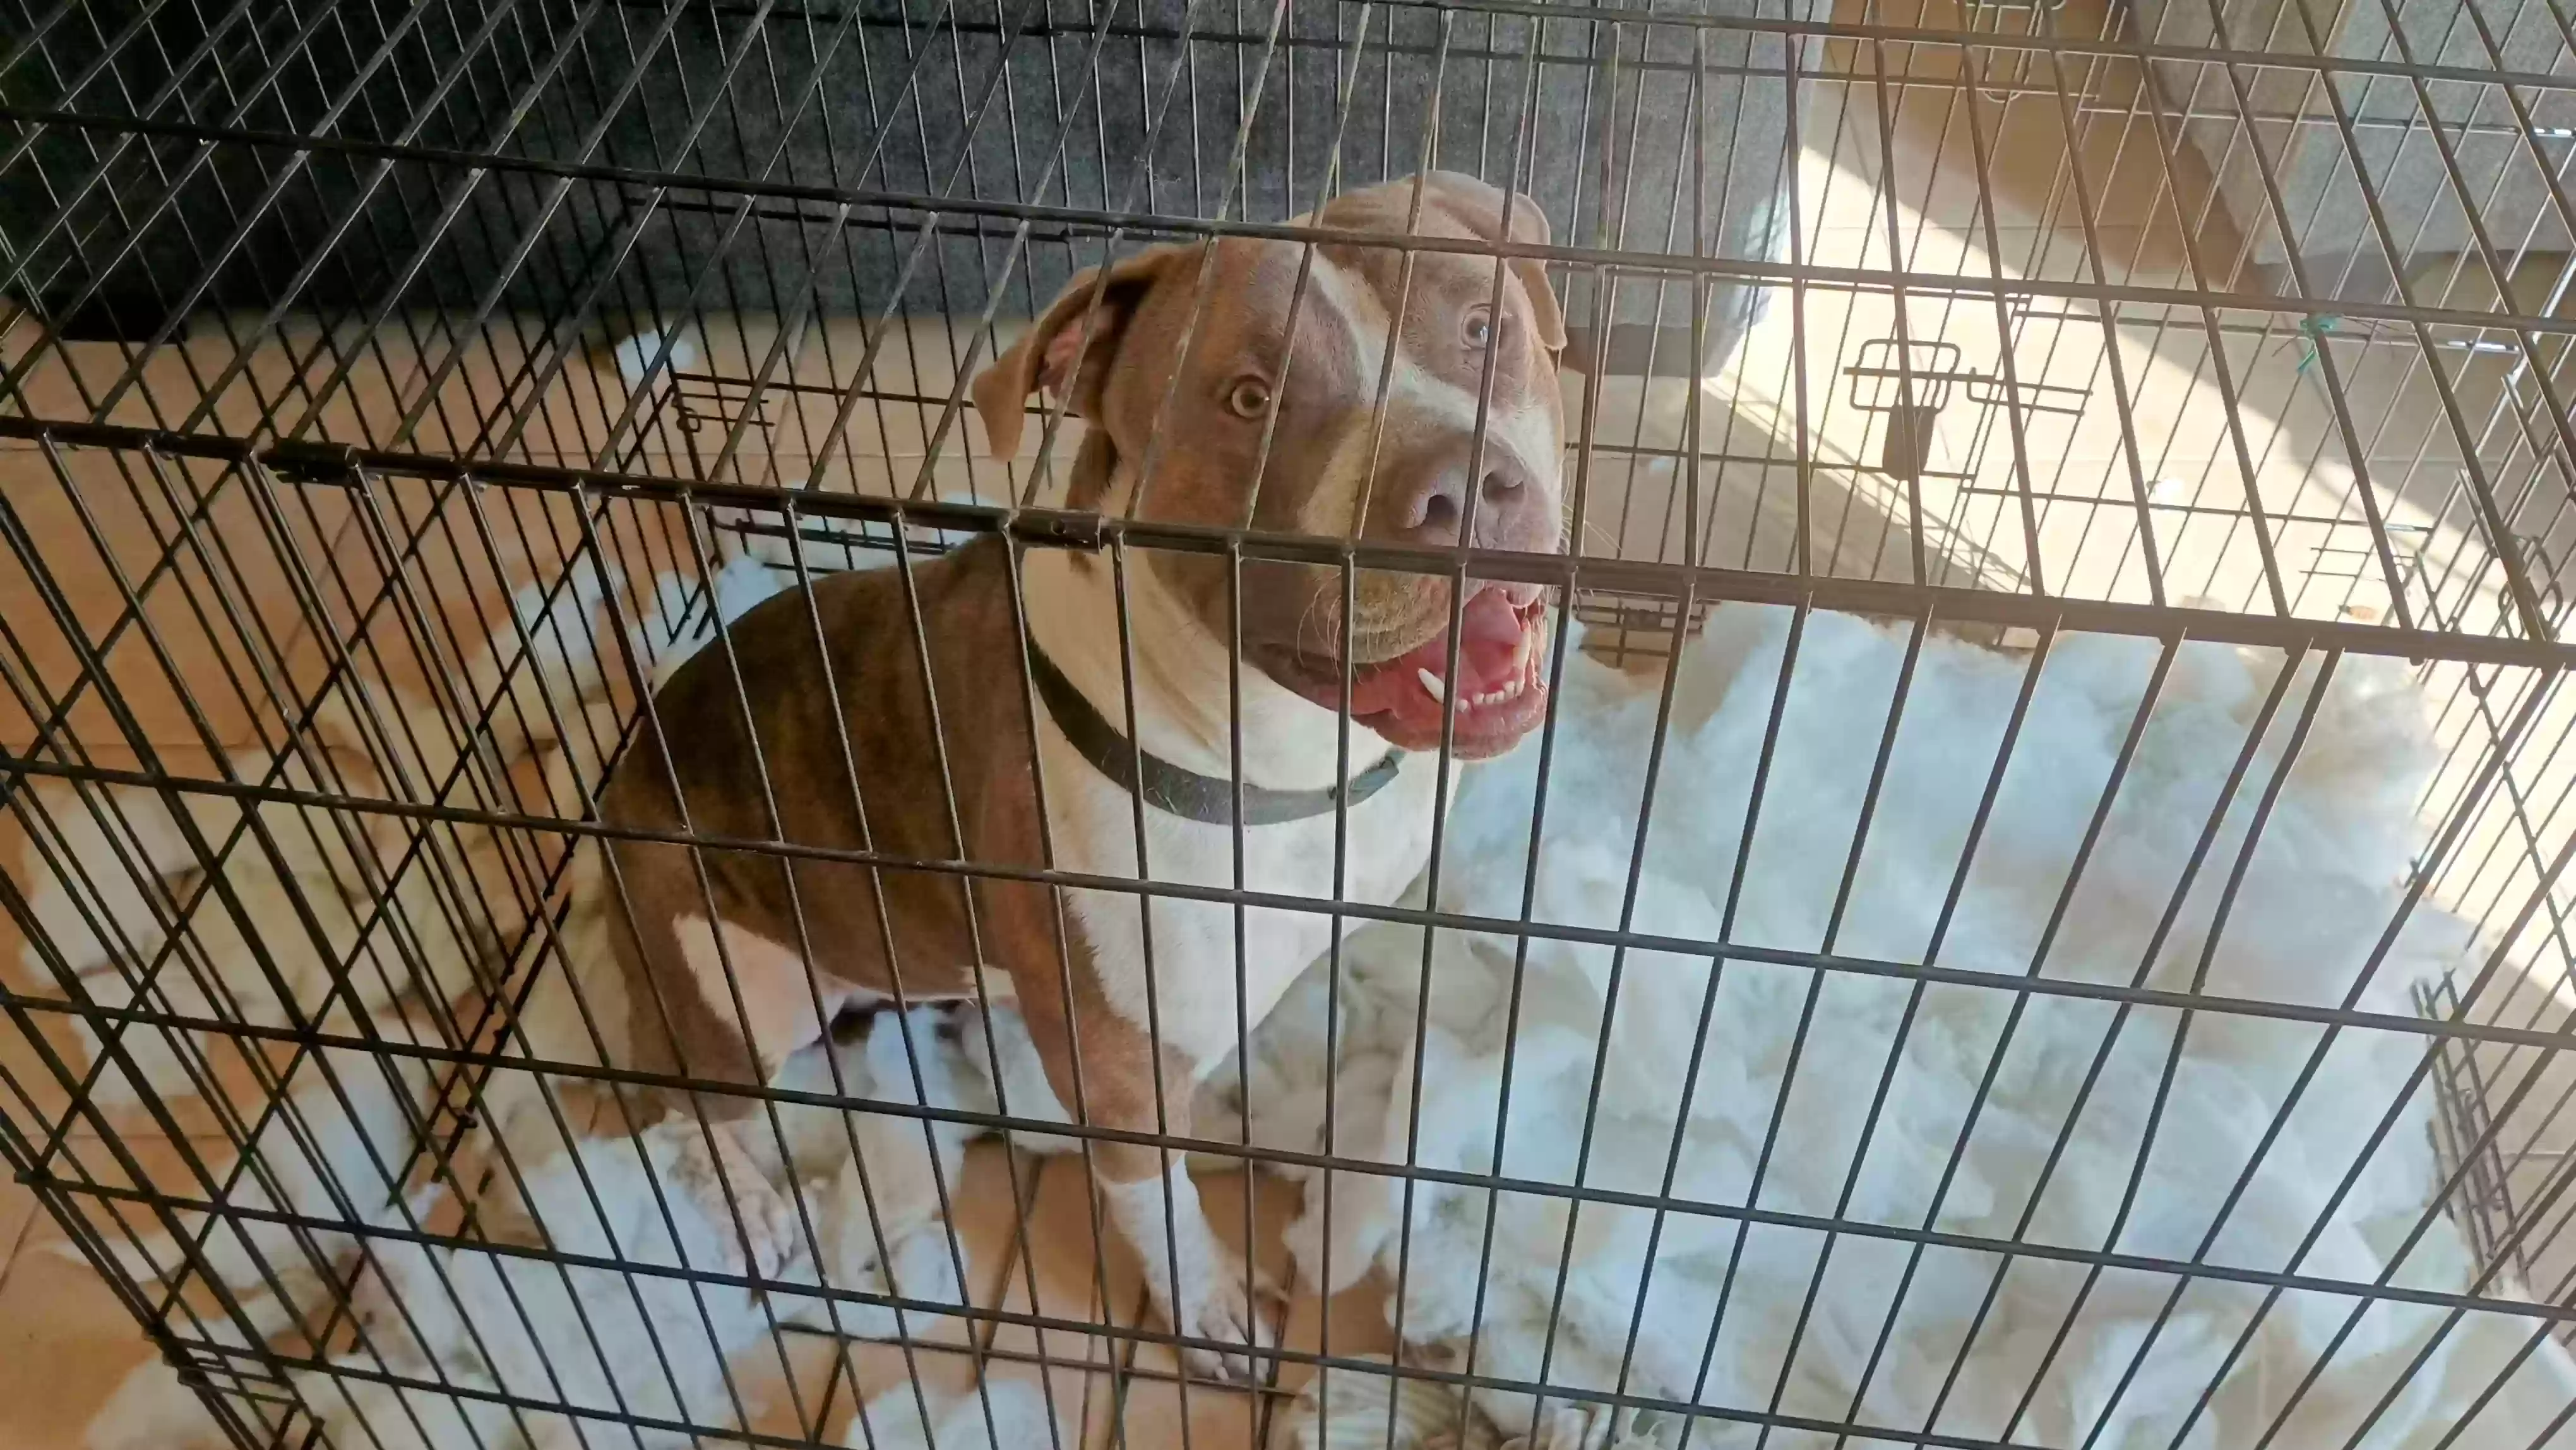 adoptable Dog in Glendale,AZ named Biggie